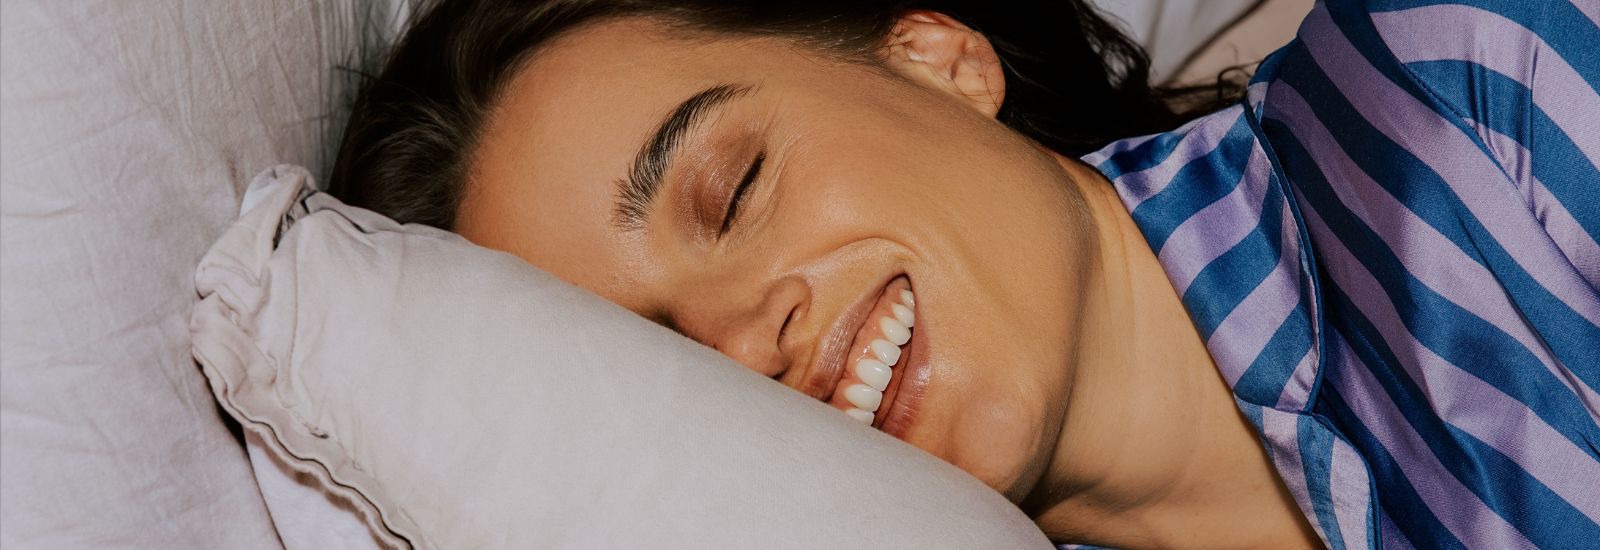 Lekker slapen? Optimaliseer jouw slaaphygiëne